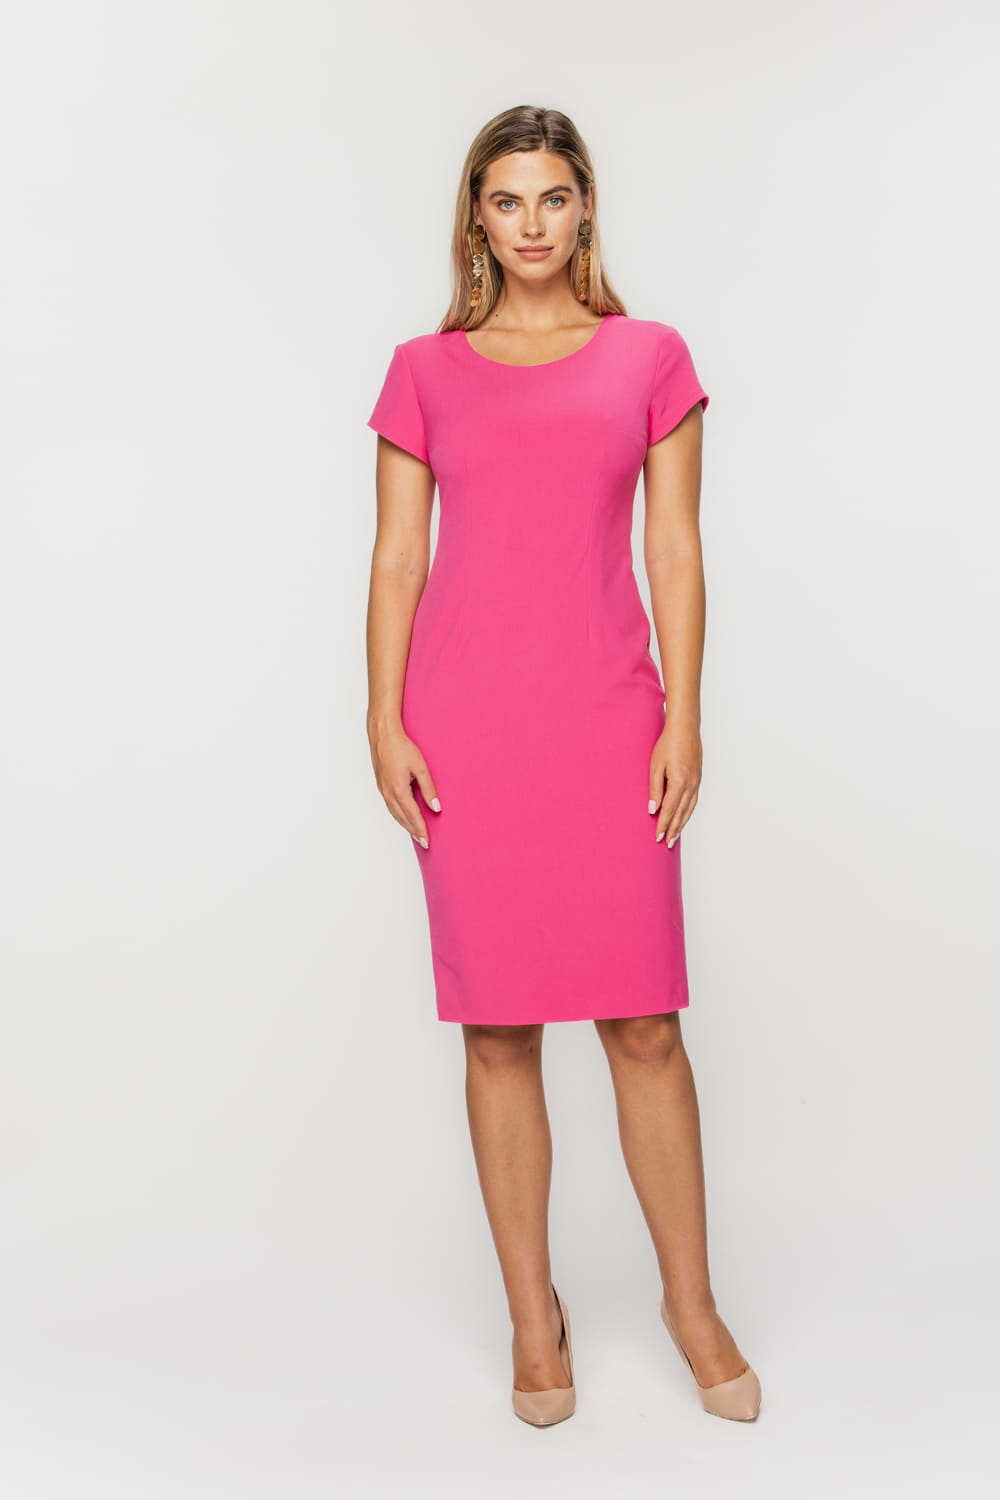 Ołówkowa sukienka w kolorze różowym